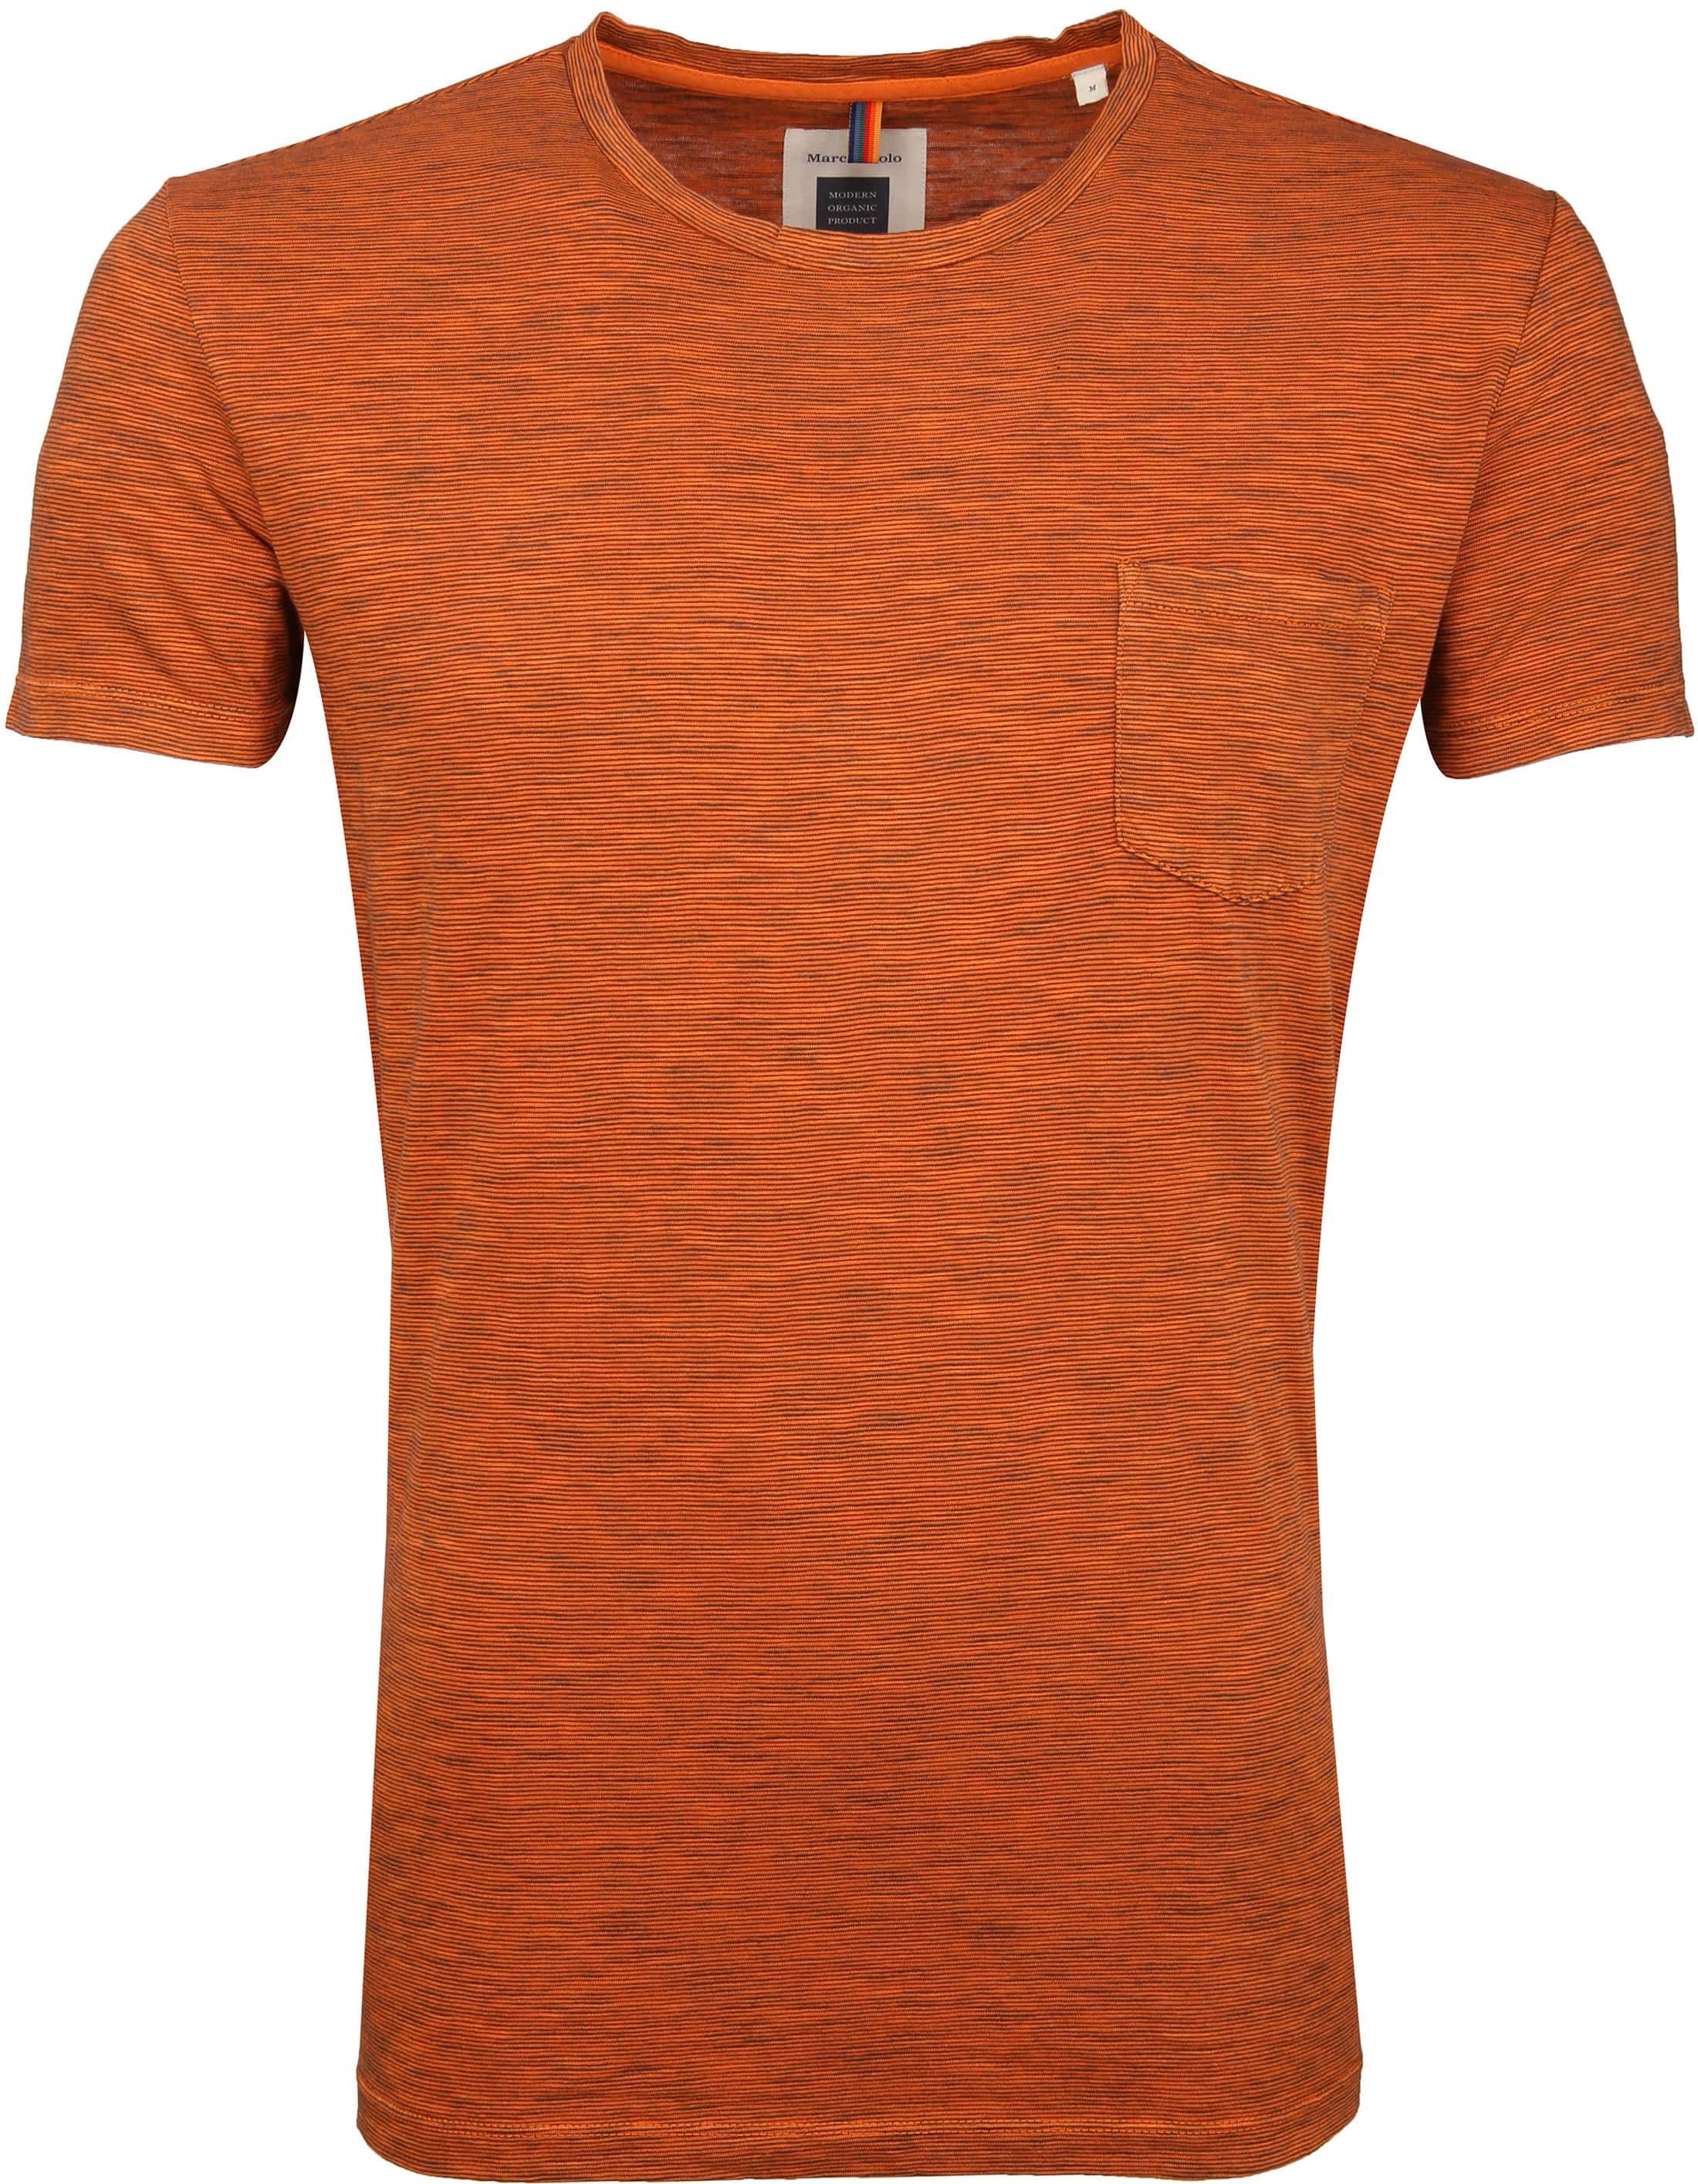 Marc O'Polo Logo T-shirt Stripe Orange Dark Blue size XXL